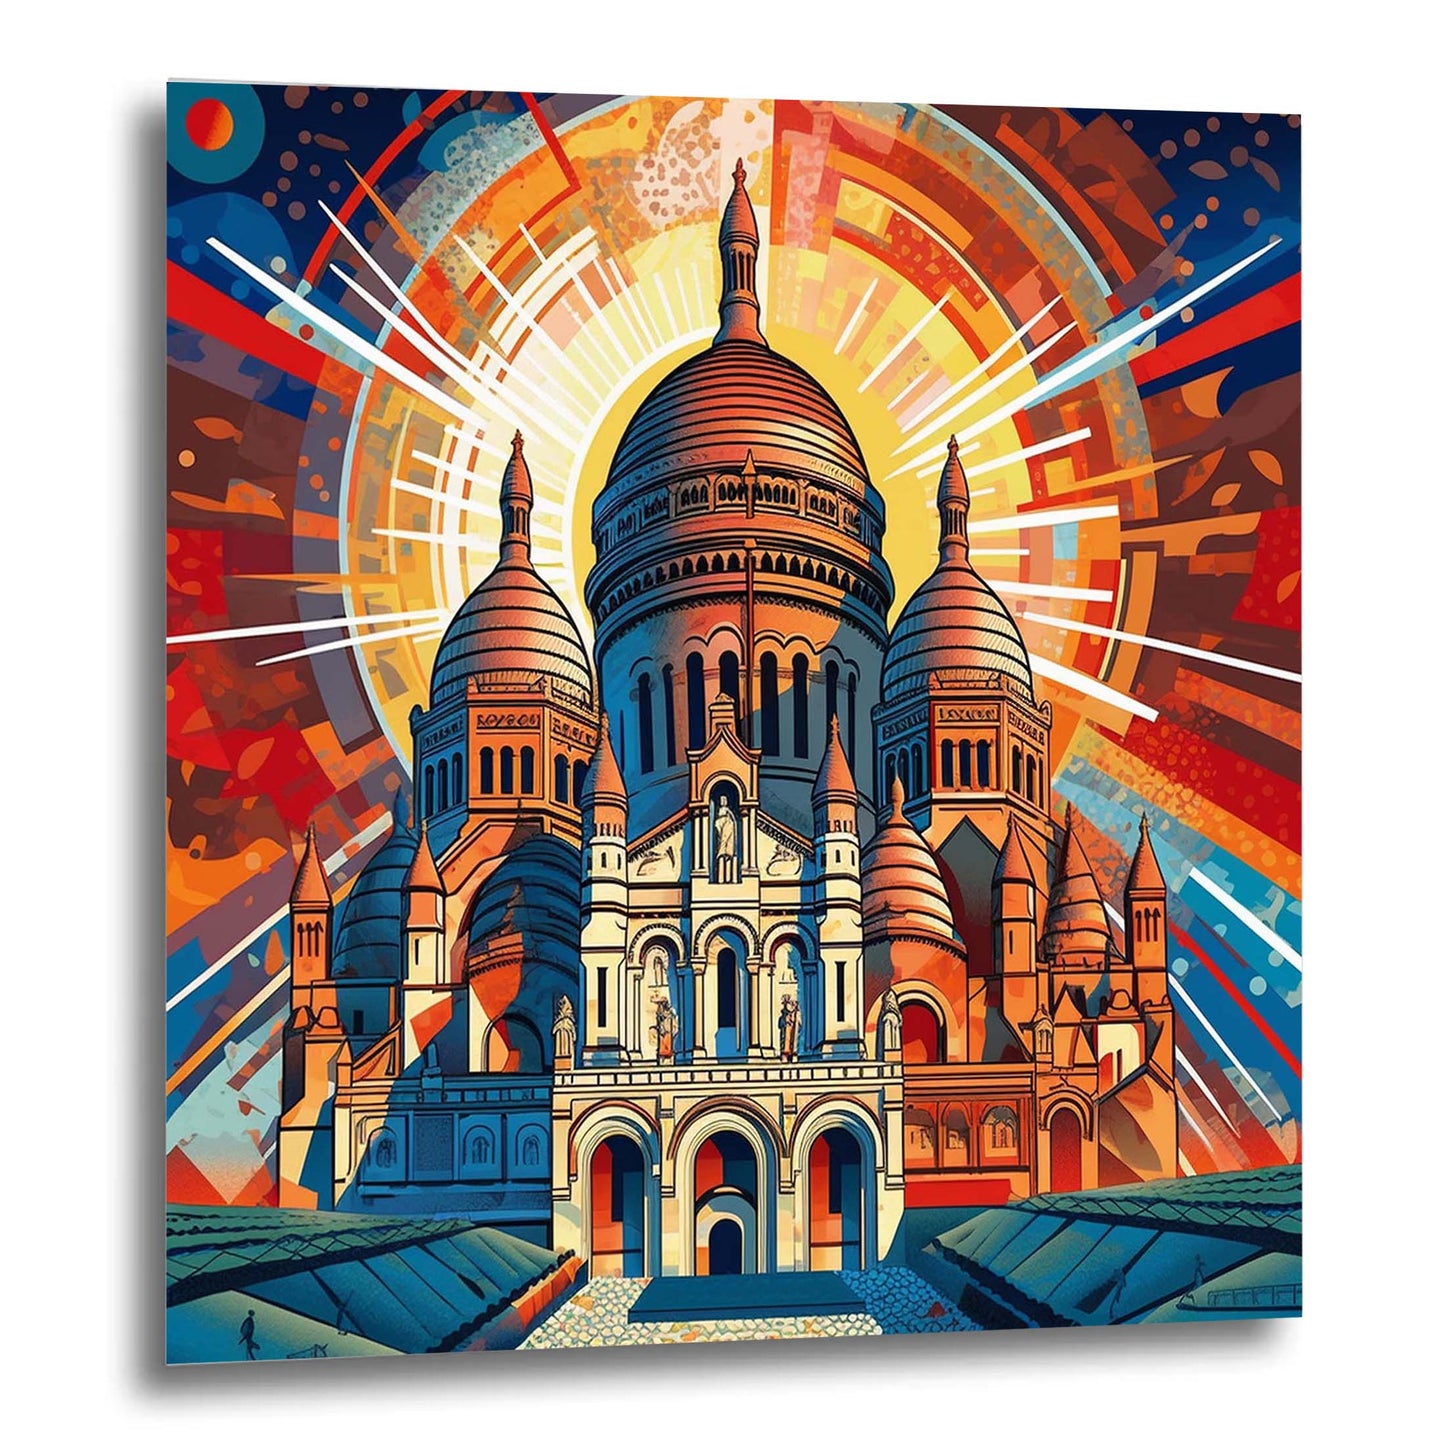 Paris Sacre Coeur - Wandbild in der Stilrichtung des Futurismus